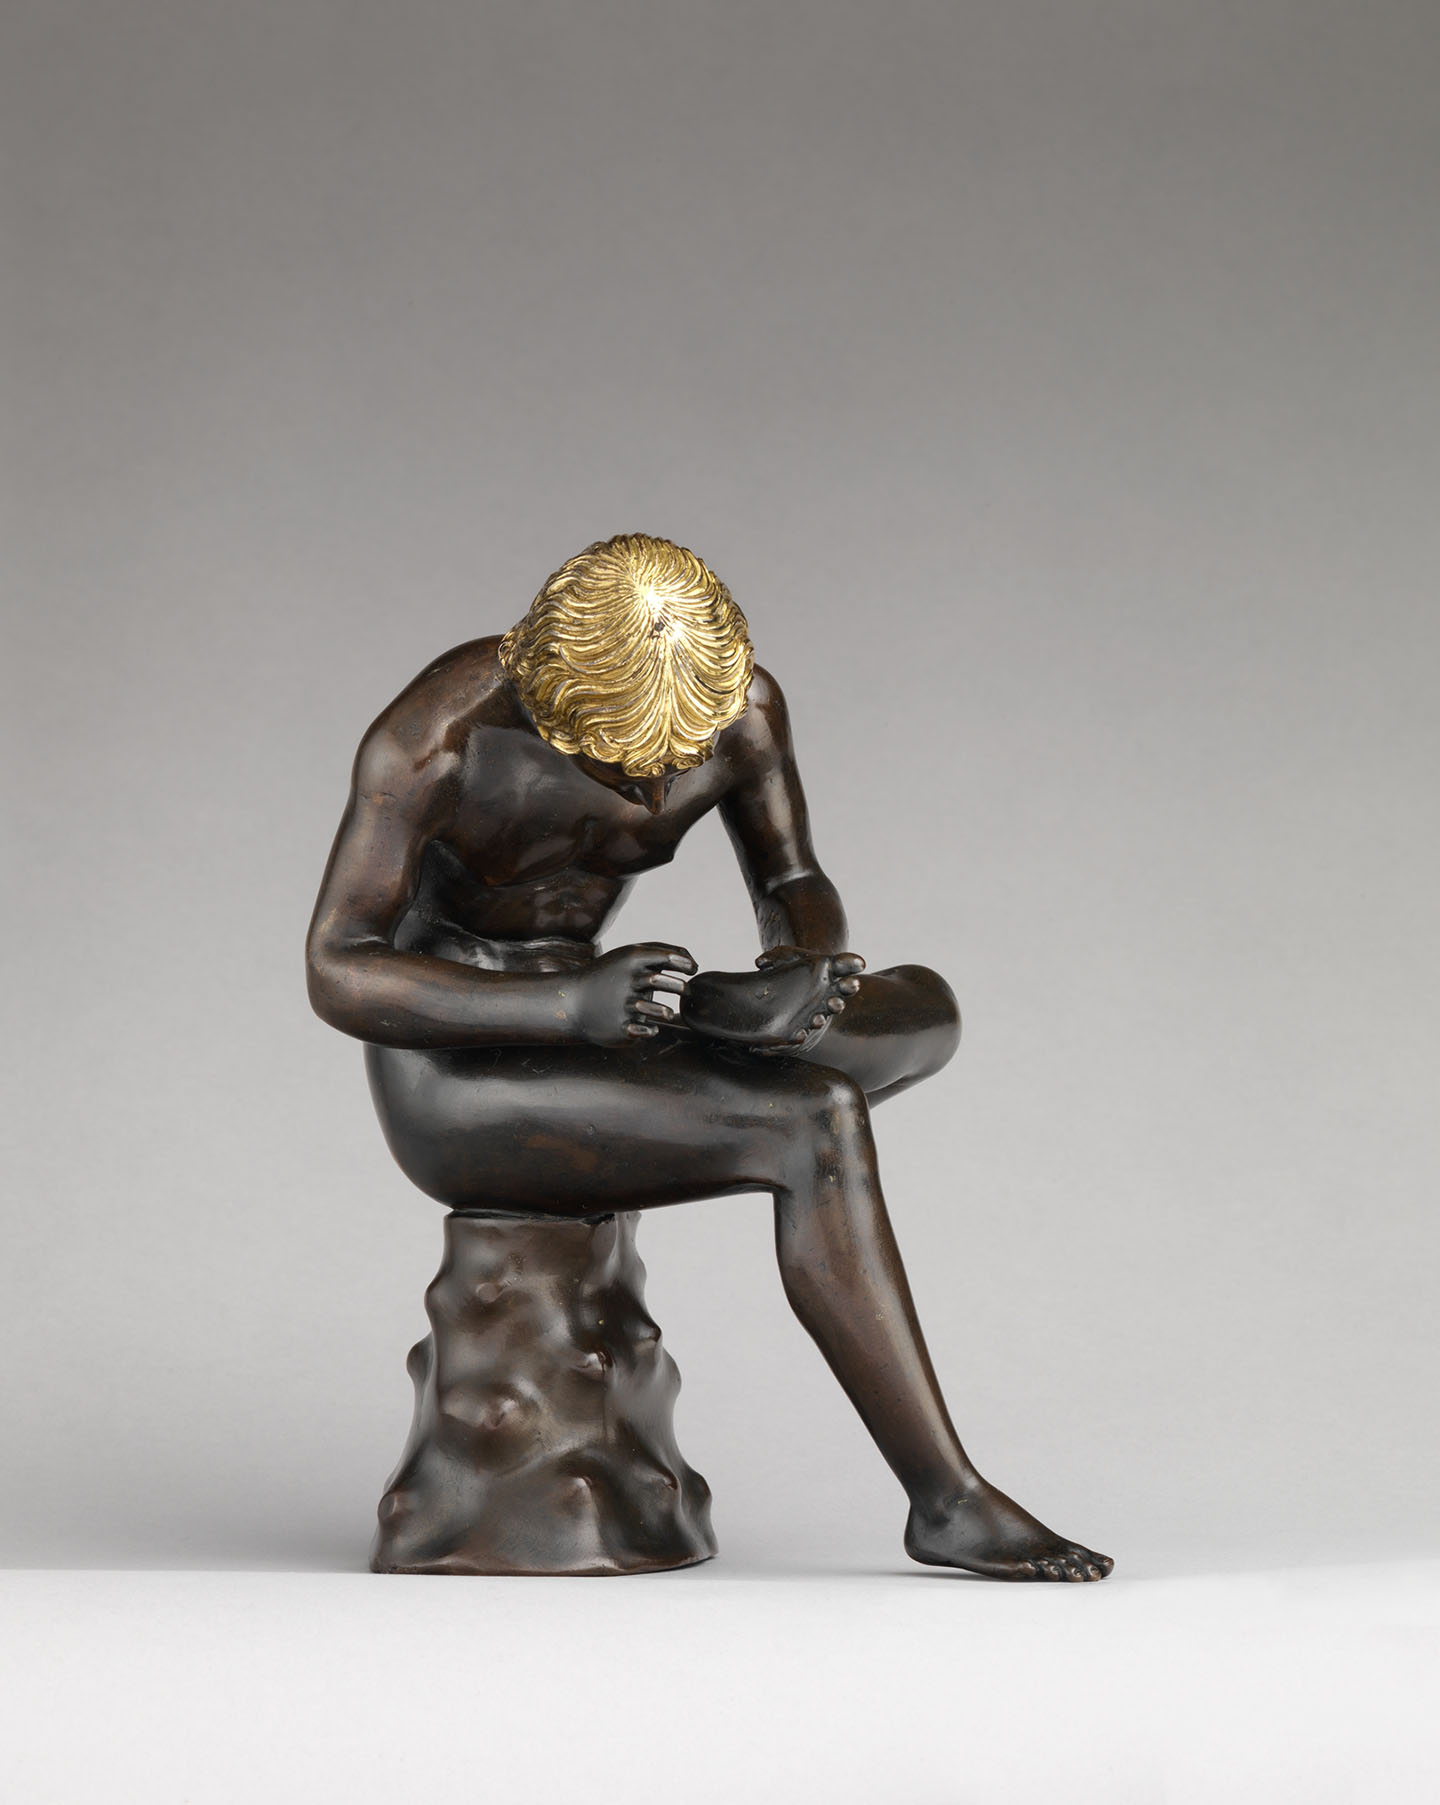 Một góc khác của tượng “Spinario” (“Cậu bé nhổ gai từ chân mình”). Bảo tàng Nghệ thuật Metropolitan, thành phố New York. (Ảnh: Tư liệu công cộng)